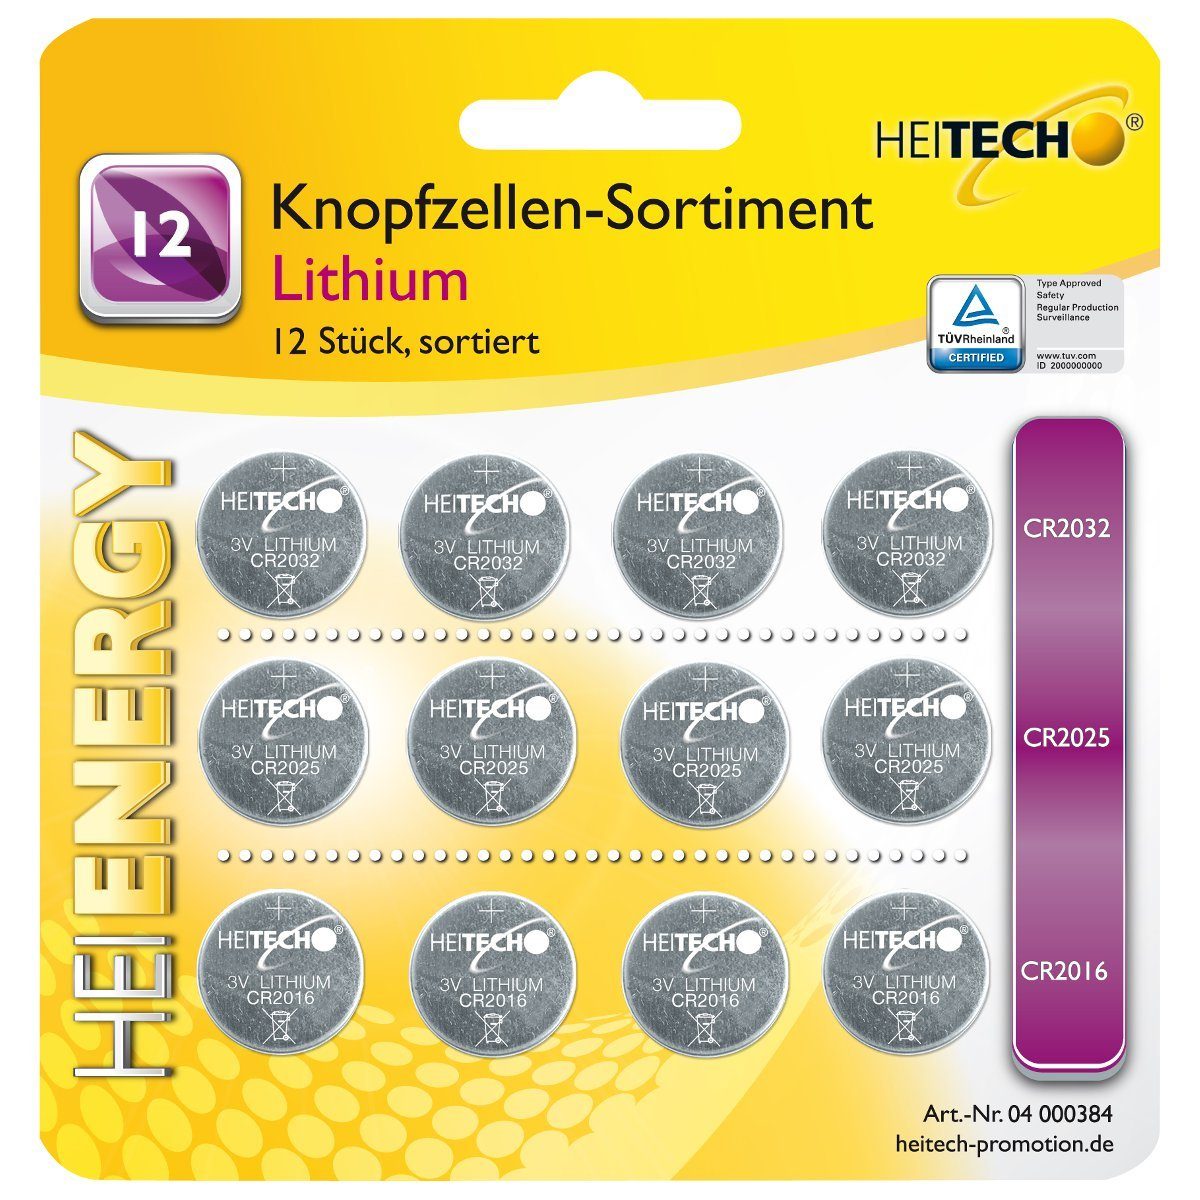 HEITECH Heitech Lithium Knopfzellen-Sortiment 12 tlg. Knopfzelle